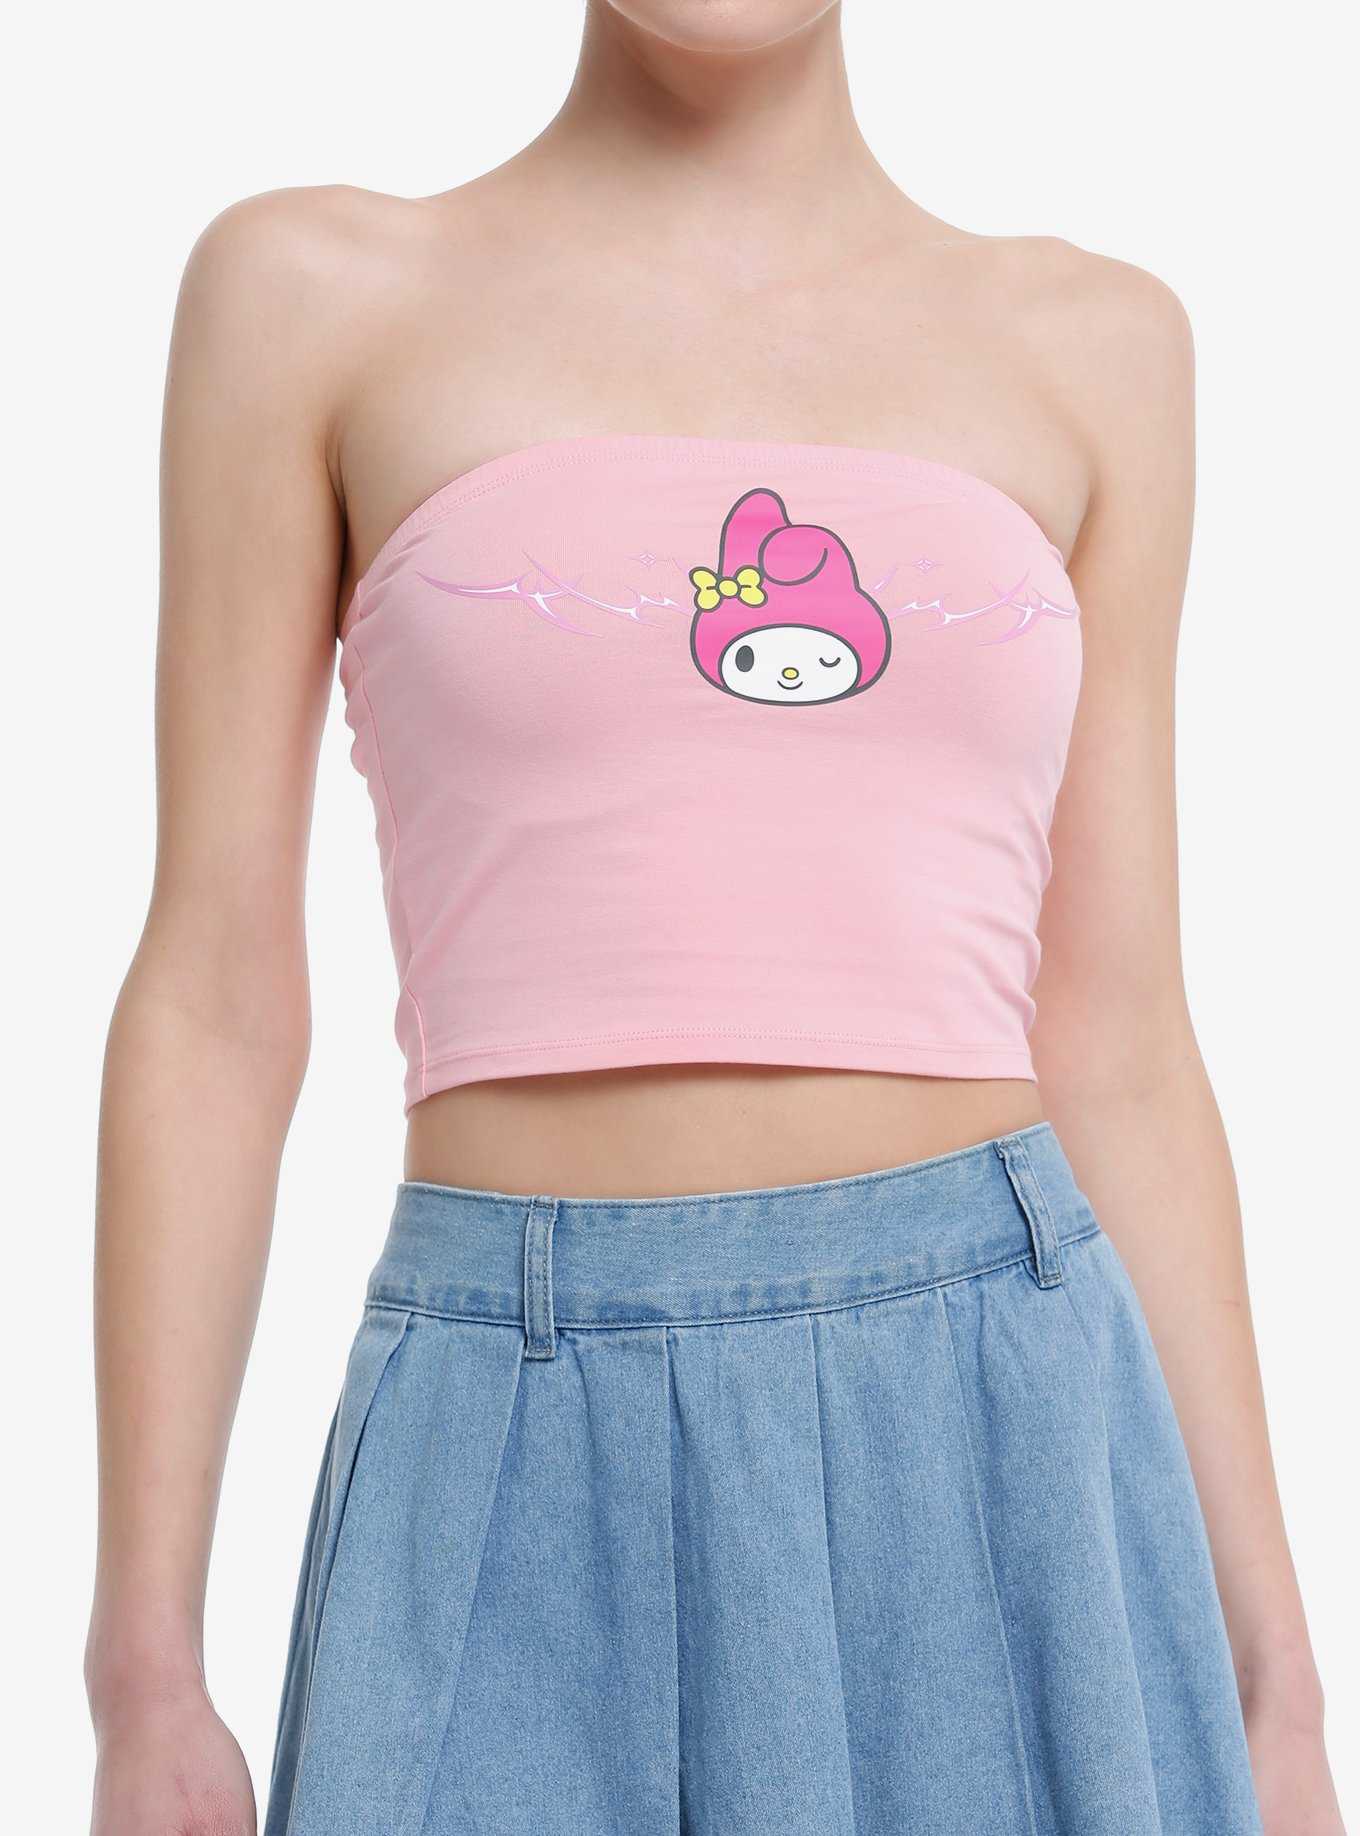 Kawaii Pink Kirby Lace Underwear for Femel Anime Figure Y2K